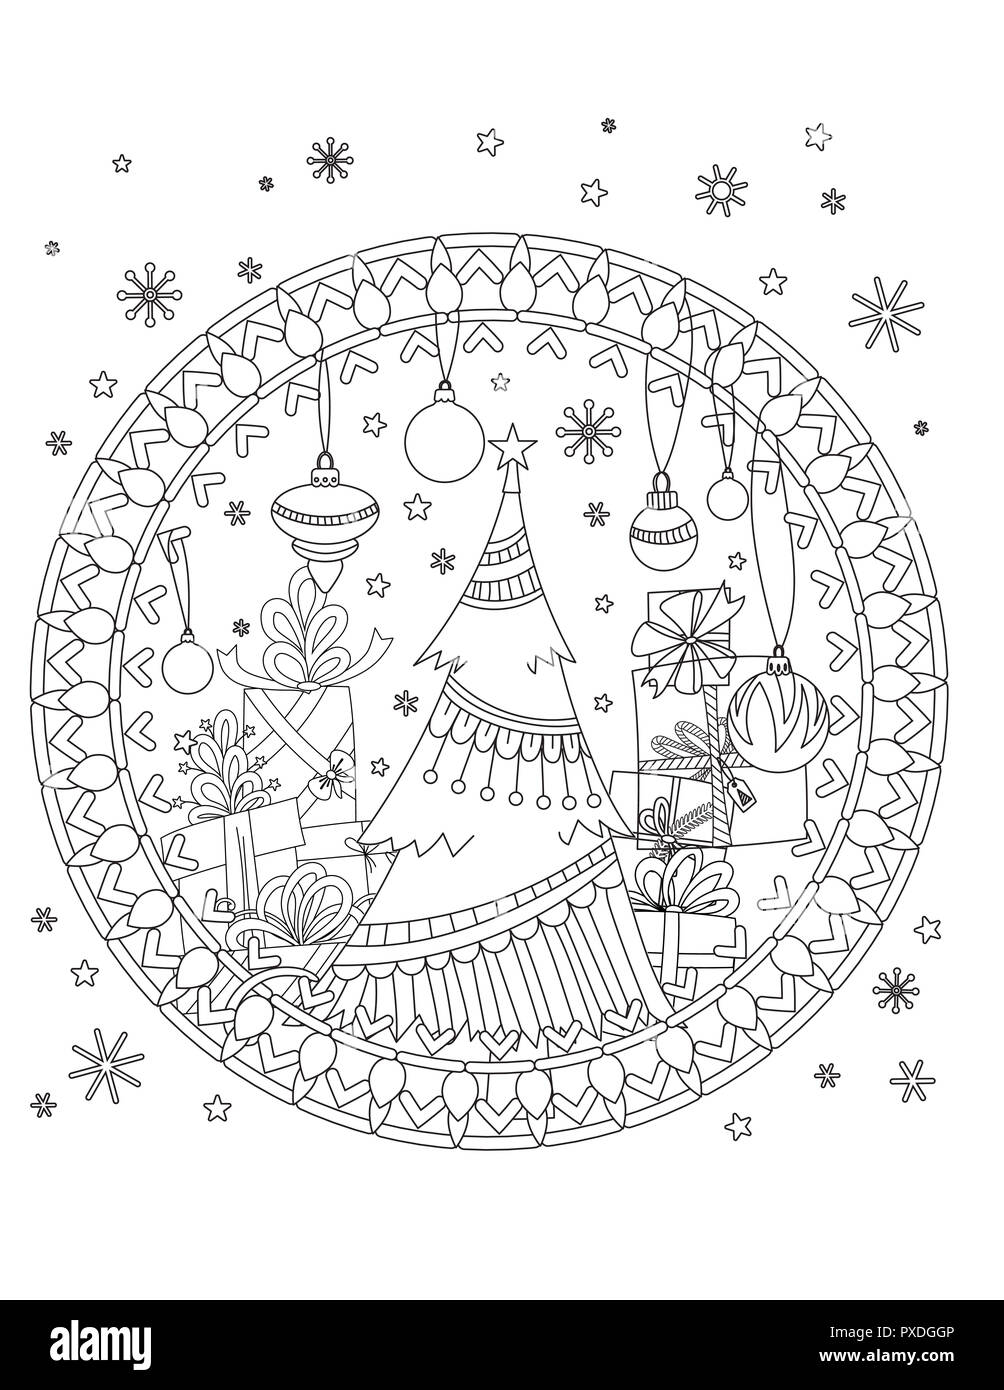 Weihnachten Färbung Seite. Nach Malbuch. Weihnachtsbaum, Dekoration, Geschenkboxen, Bänder, Bälle und Schneeflocken. Hand Überblick Abbildung gezeichnet. Stockfoto